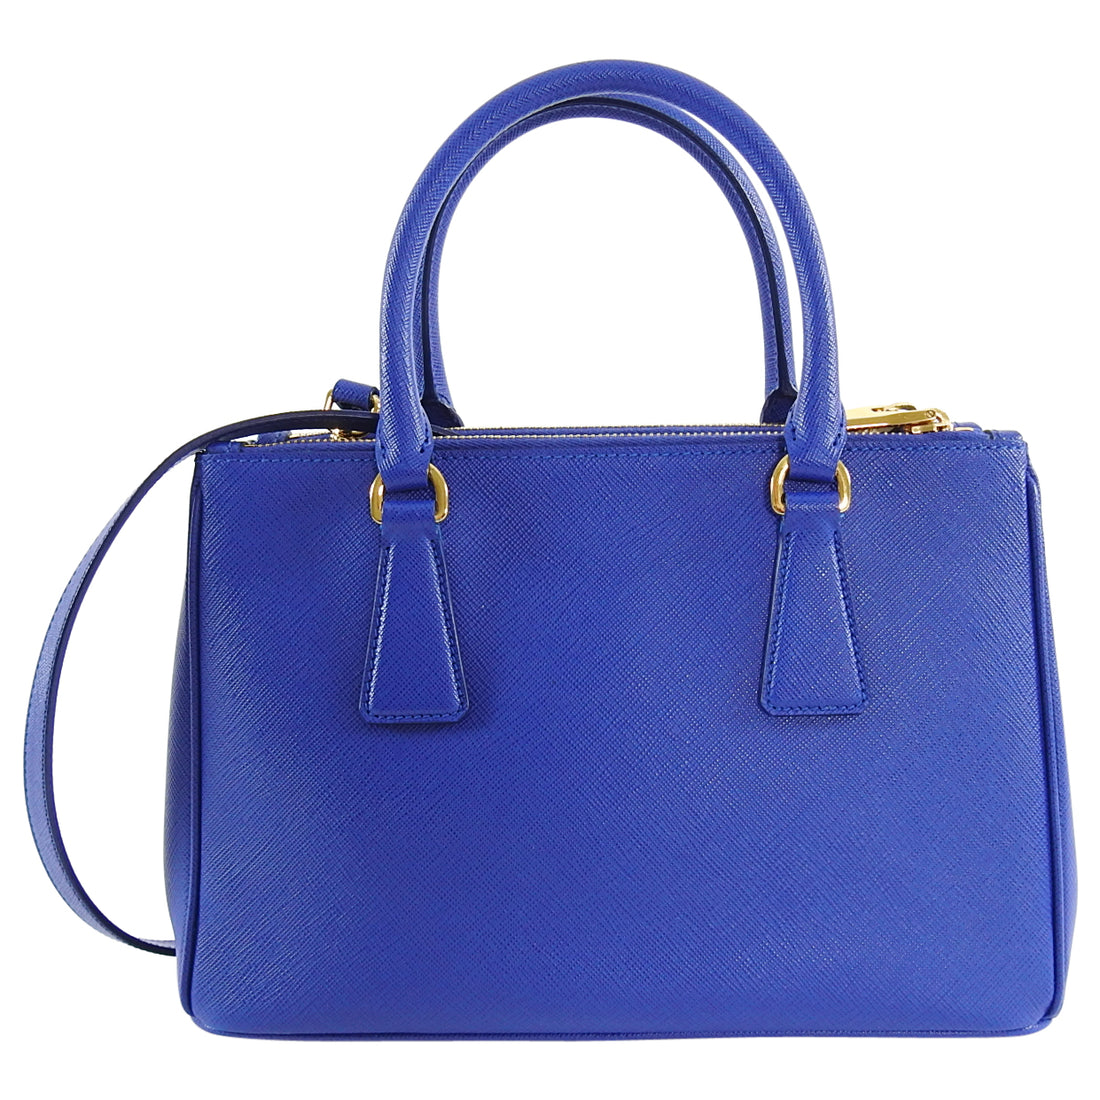 Prada Saffiano Cobalt Blue Mini Galleria Tote Bag – I MISS YOU VINTAGE